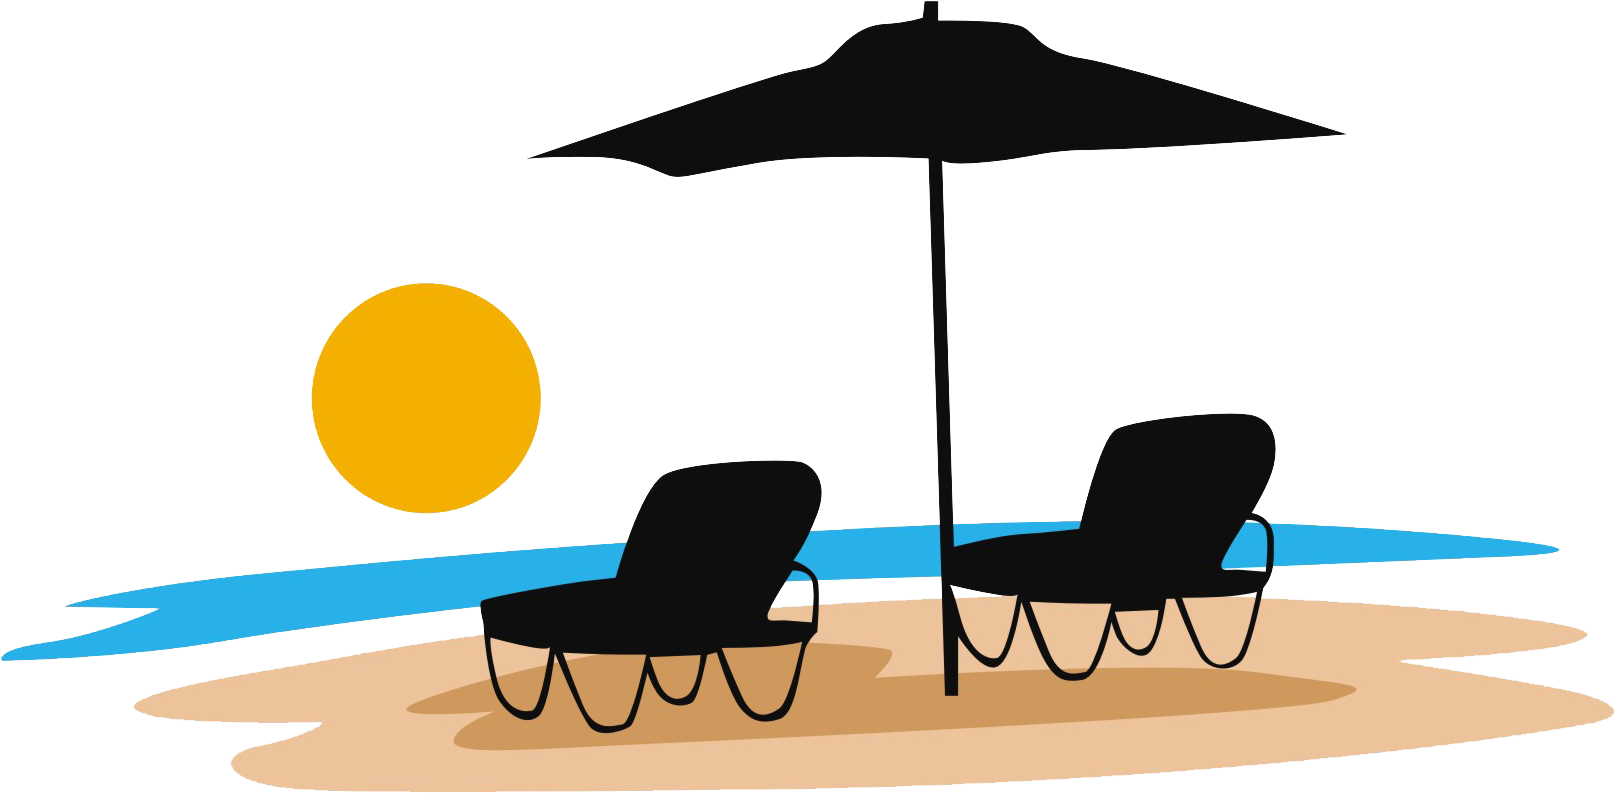 A Beach Chair And Umbrella On A Beach